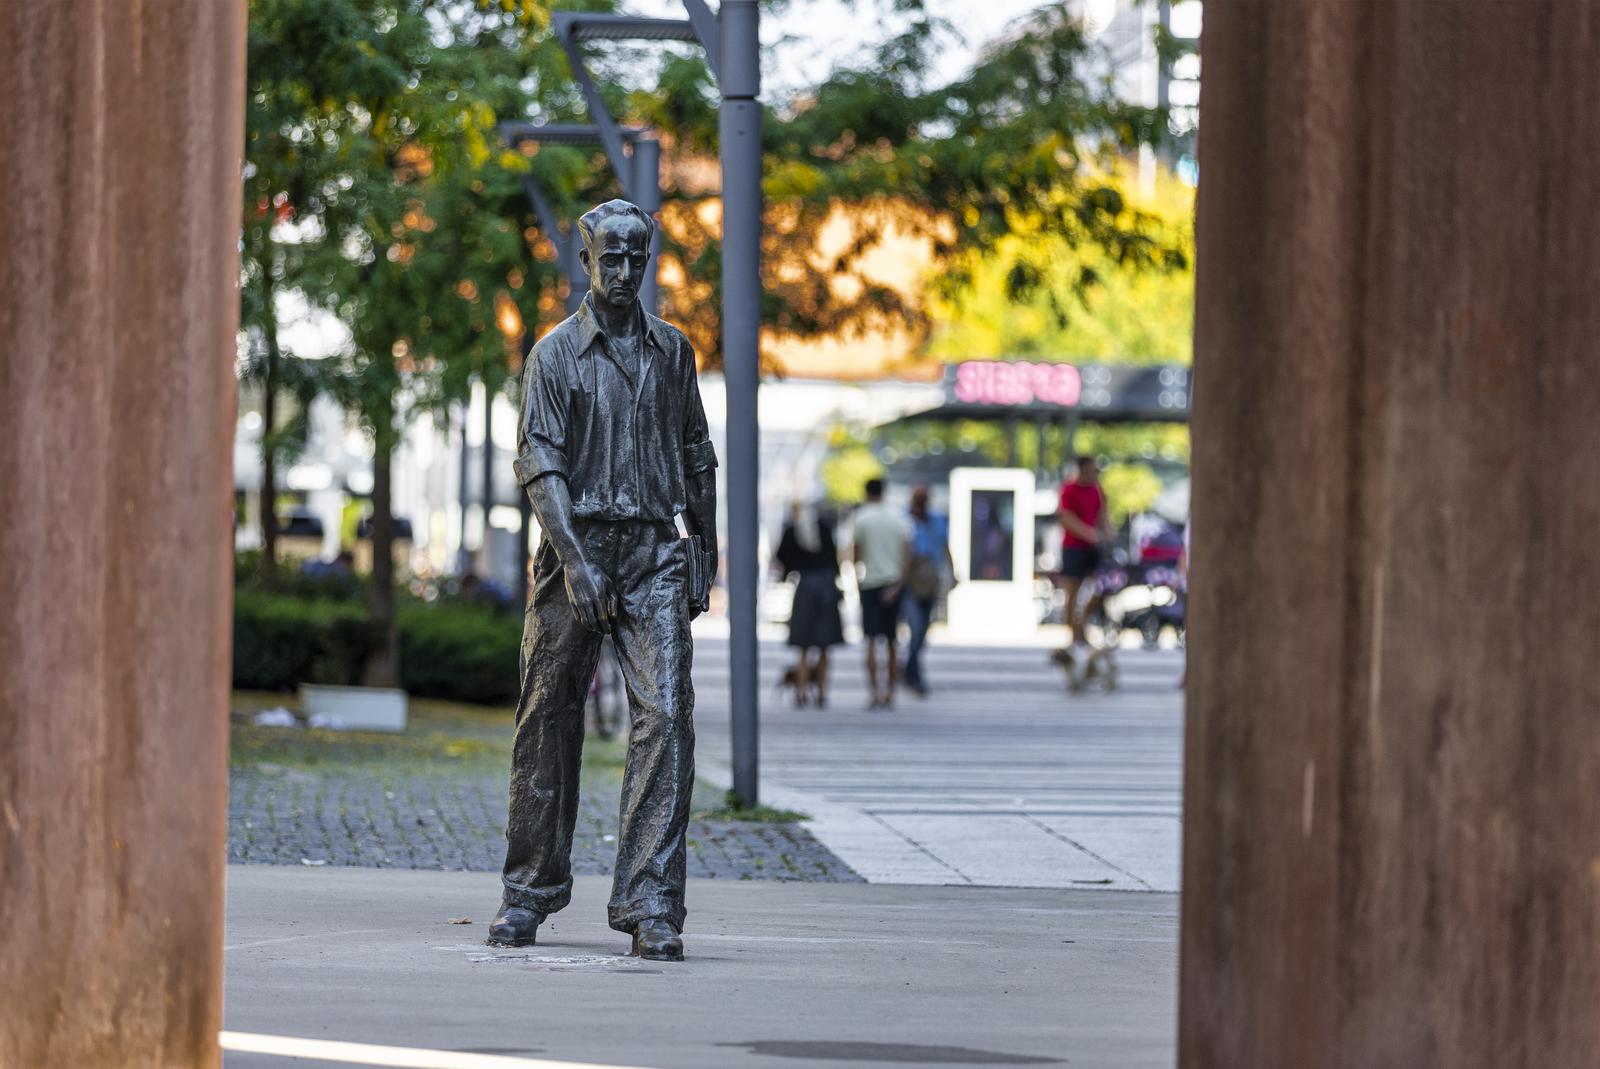 15.09.2021., Osijek - Setac je jedan od najpoznatijih simbola i ulicnih skulptura te na poseban nacin predstavlja grad. Setac je na Trgu slobode u Osijeku postavljen 1974. godine kada je to bila prva ulicna skulptura u Hrvatskoj i jedna od prvih u ovom dijelu Europe. To je silueta broncane skulpture poznatog hrvatskog knjizevnika i publicista Augusta Cesarca, koju je osmislio i izradio osjecki akademski kipar Stjepan Gracan. Nedugo nakon postavljanja, stanovnici Osijeka su broncanoj skulpturi dali nadimak "Setačc" te je pod tim nadimkom spomenik poznat i izvan granica grada Osijeka. Spomenik je visok dva metra i jedan je od rijetkih osjeckih spomenika koji je prezivio Domovinski rat. Photo:Davor Javorovic/PIXSELL